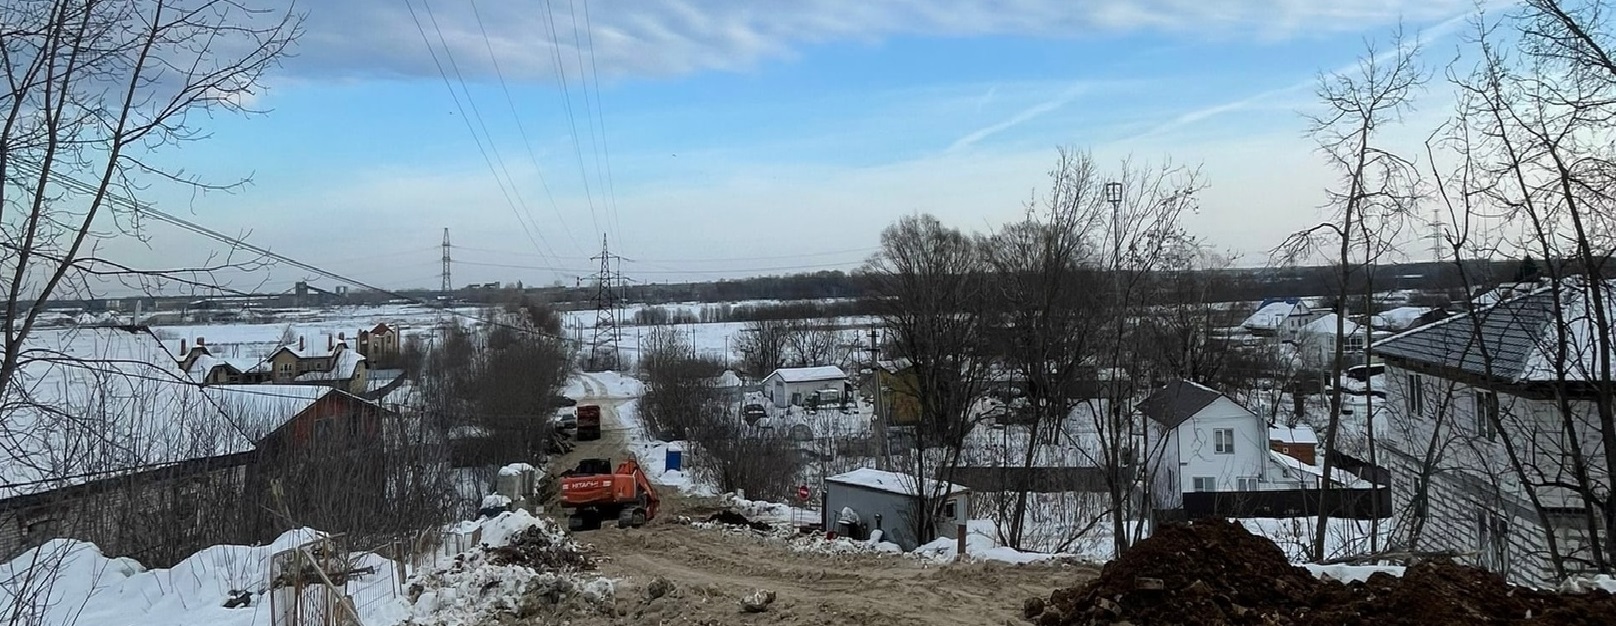  АО «Нижегородский водоканал» завершил реконструкцию двух участков канализационного дюкера в районе деревни Никульское